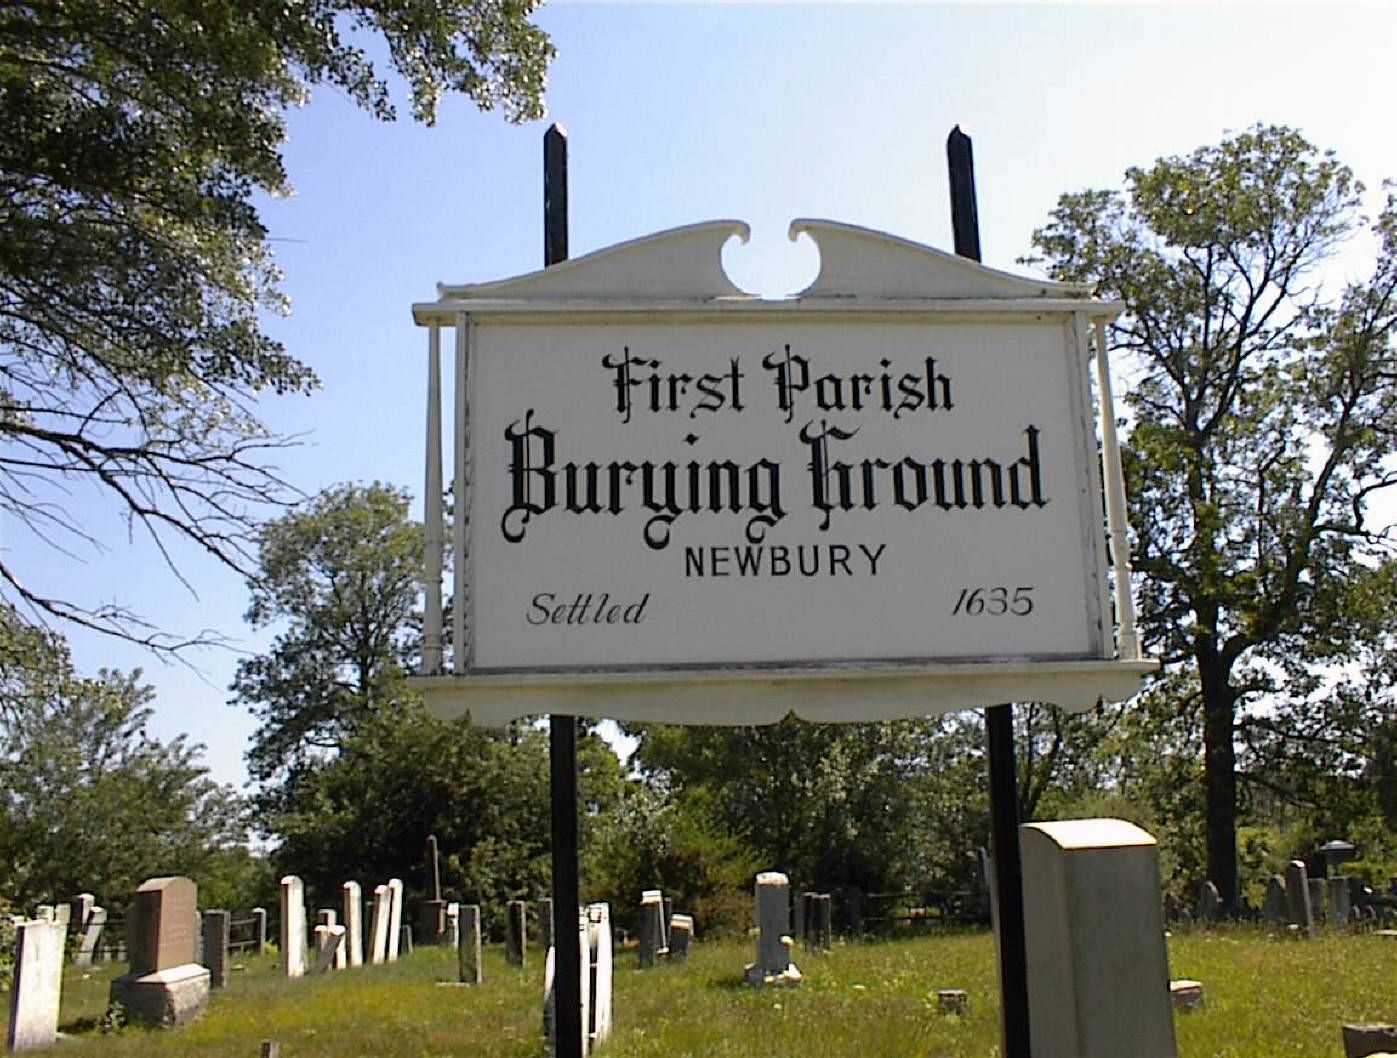 First Parish Burying Ground